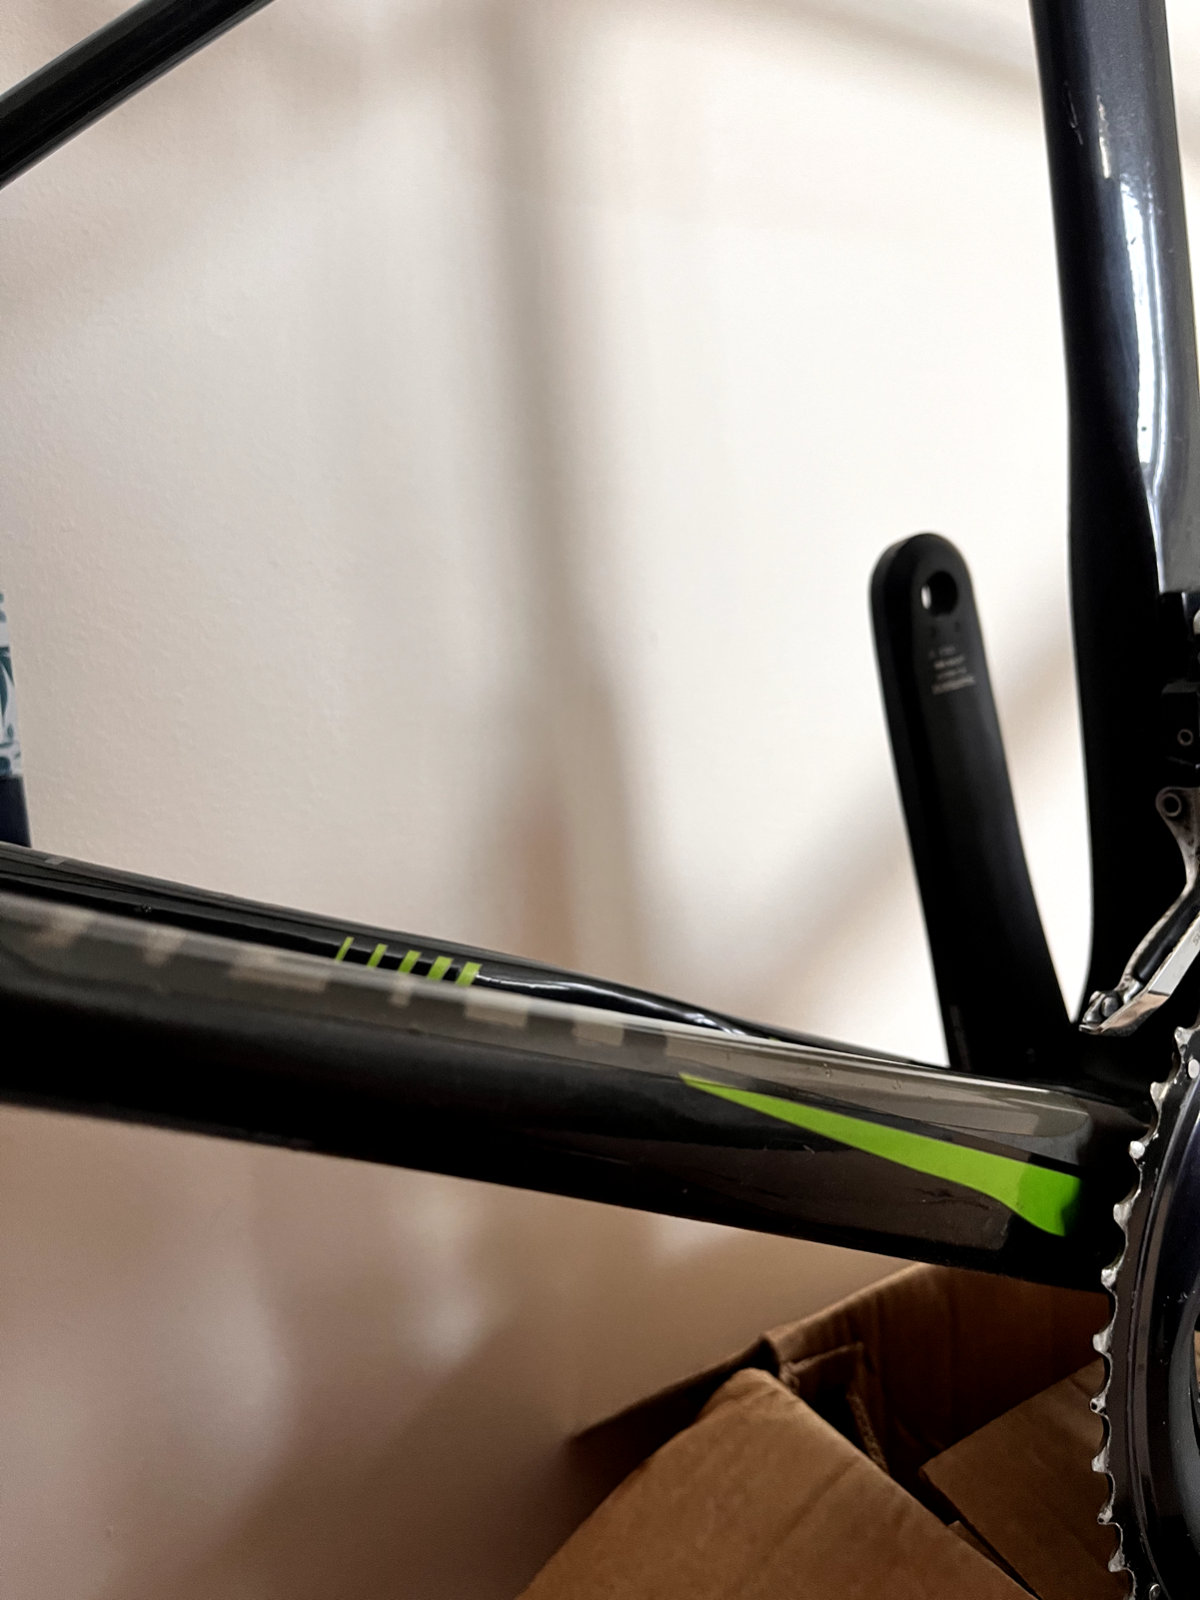 Giant TCR Advanced Pro 1 Medium 54cm Carbon Road Bike Frameset Black Green